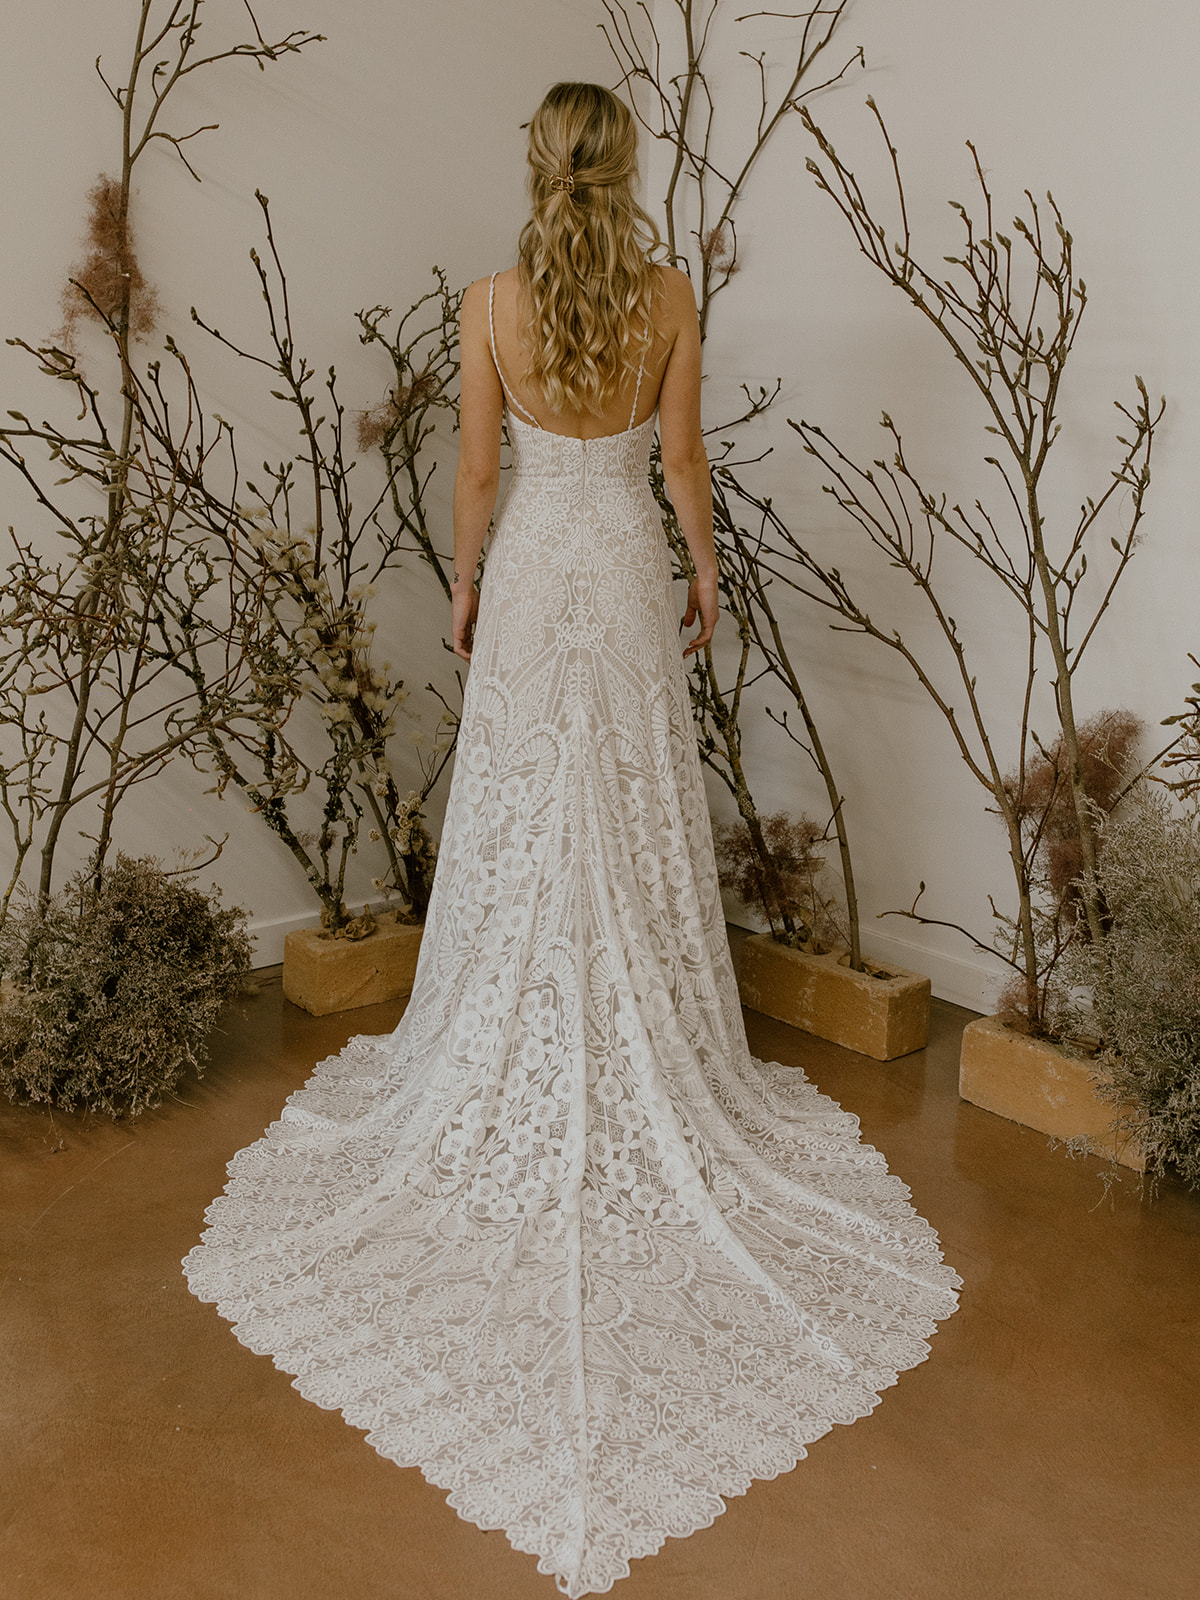 Arielle-boho-romantic-a-line-wedding-dress-for-thr-unique-bohemian-bride